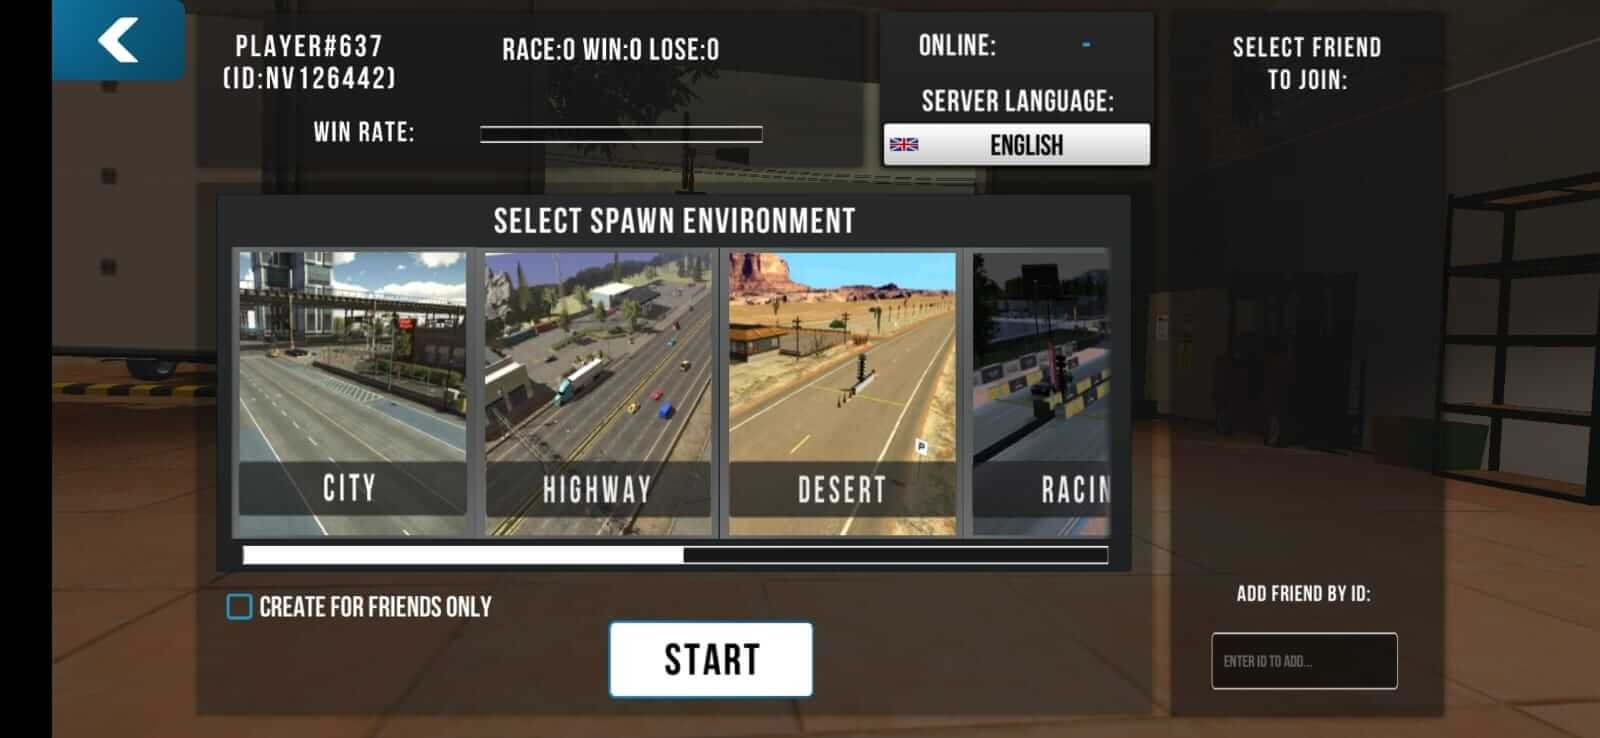 Baixar Car Parking Multiplayer Mod APK v4.8.14.8 (Dinheiro Ilimitado)